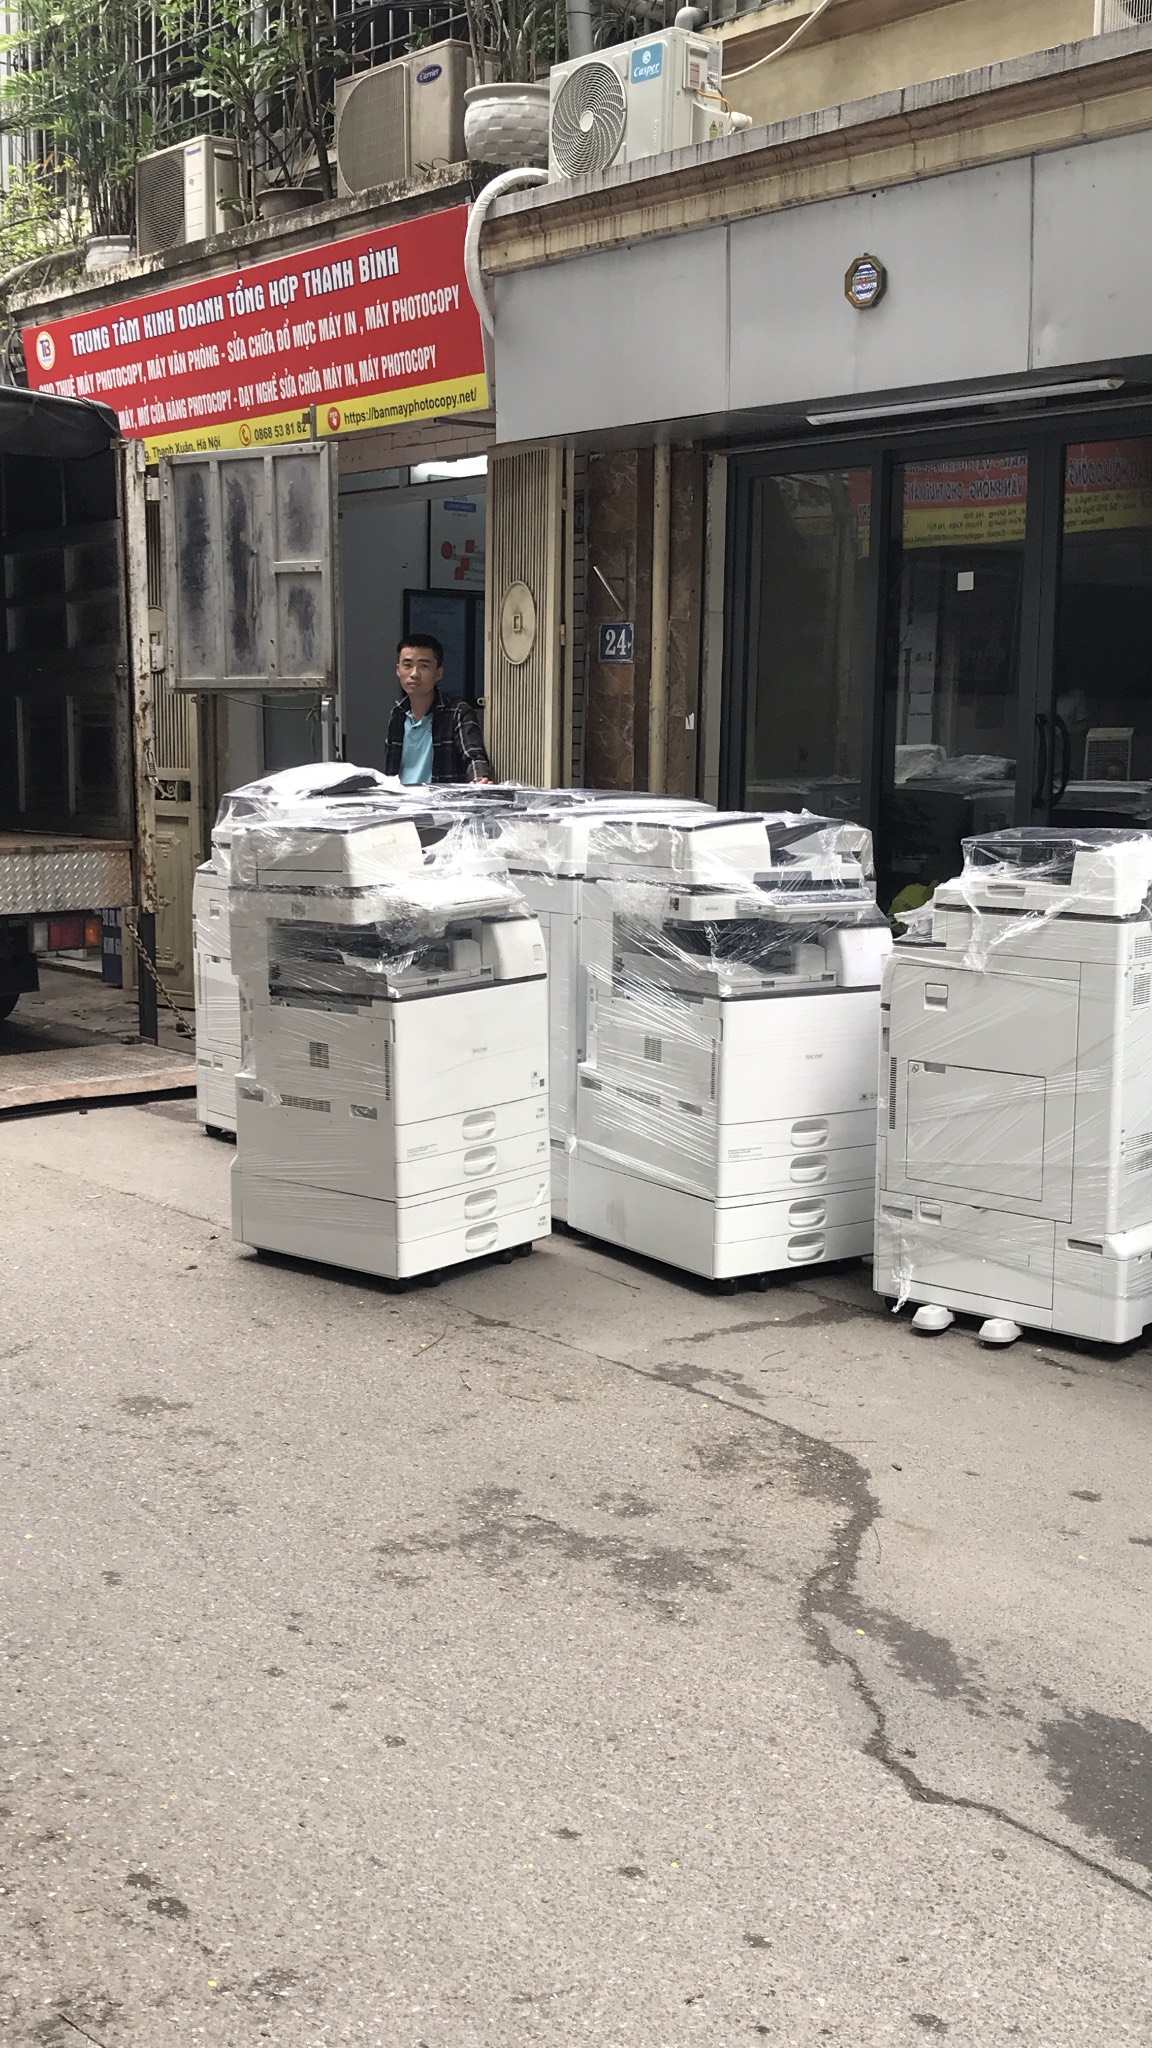 Bán máy photocopy đa chức năng, chính hãng, giá rẻ nhất toàn quốc